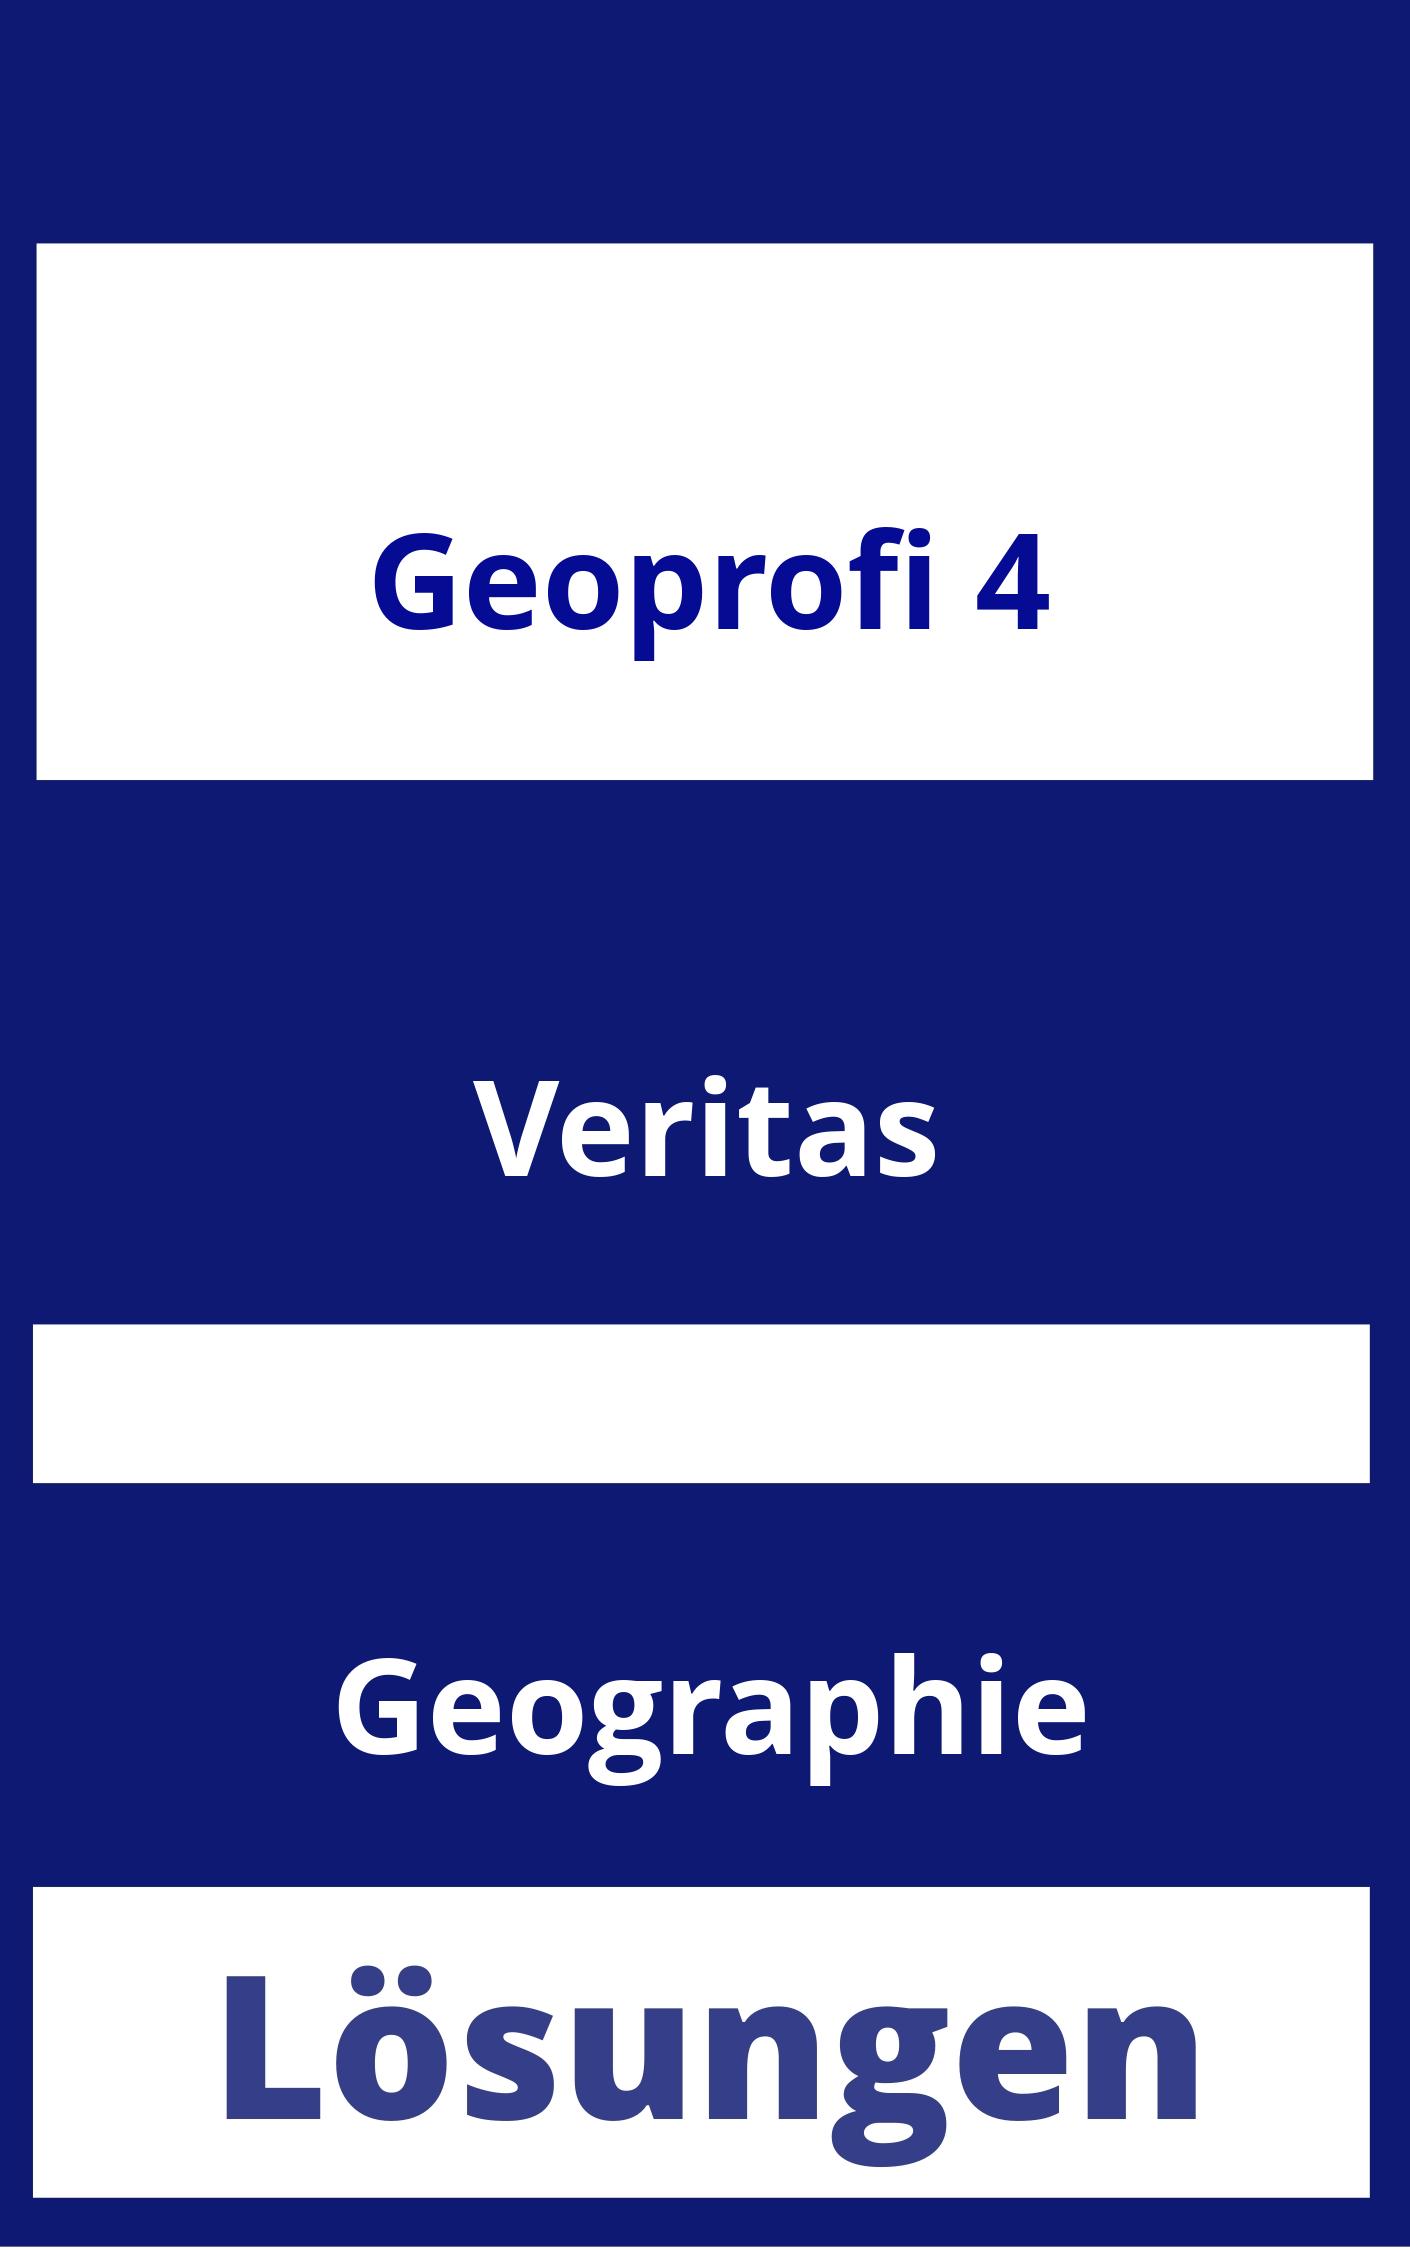 GEOprofi 4